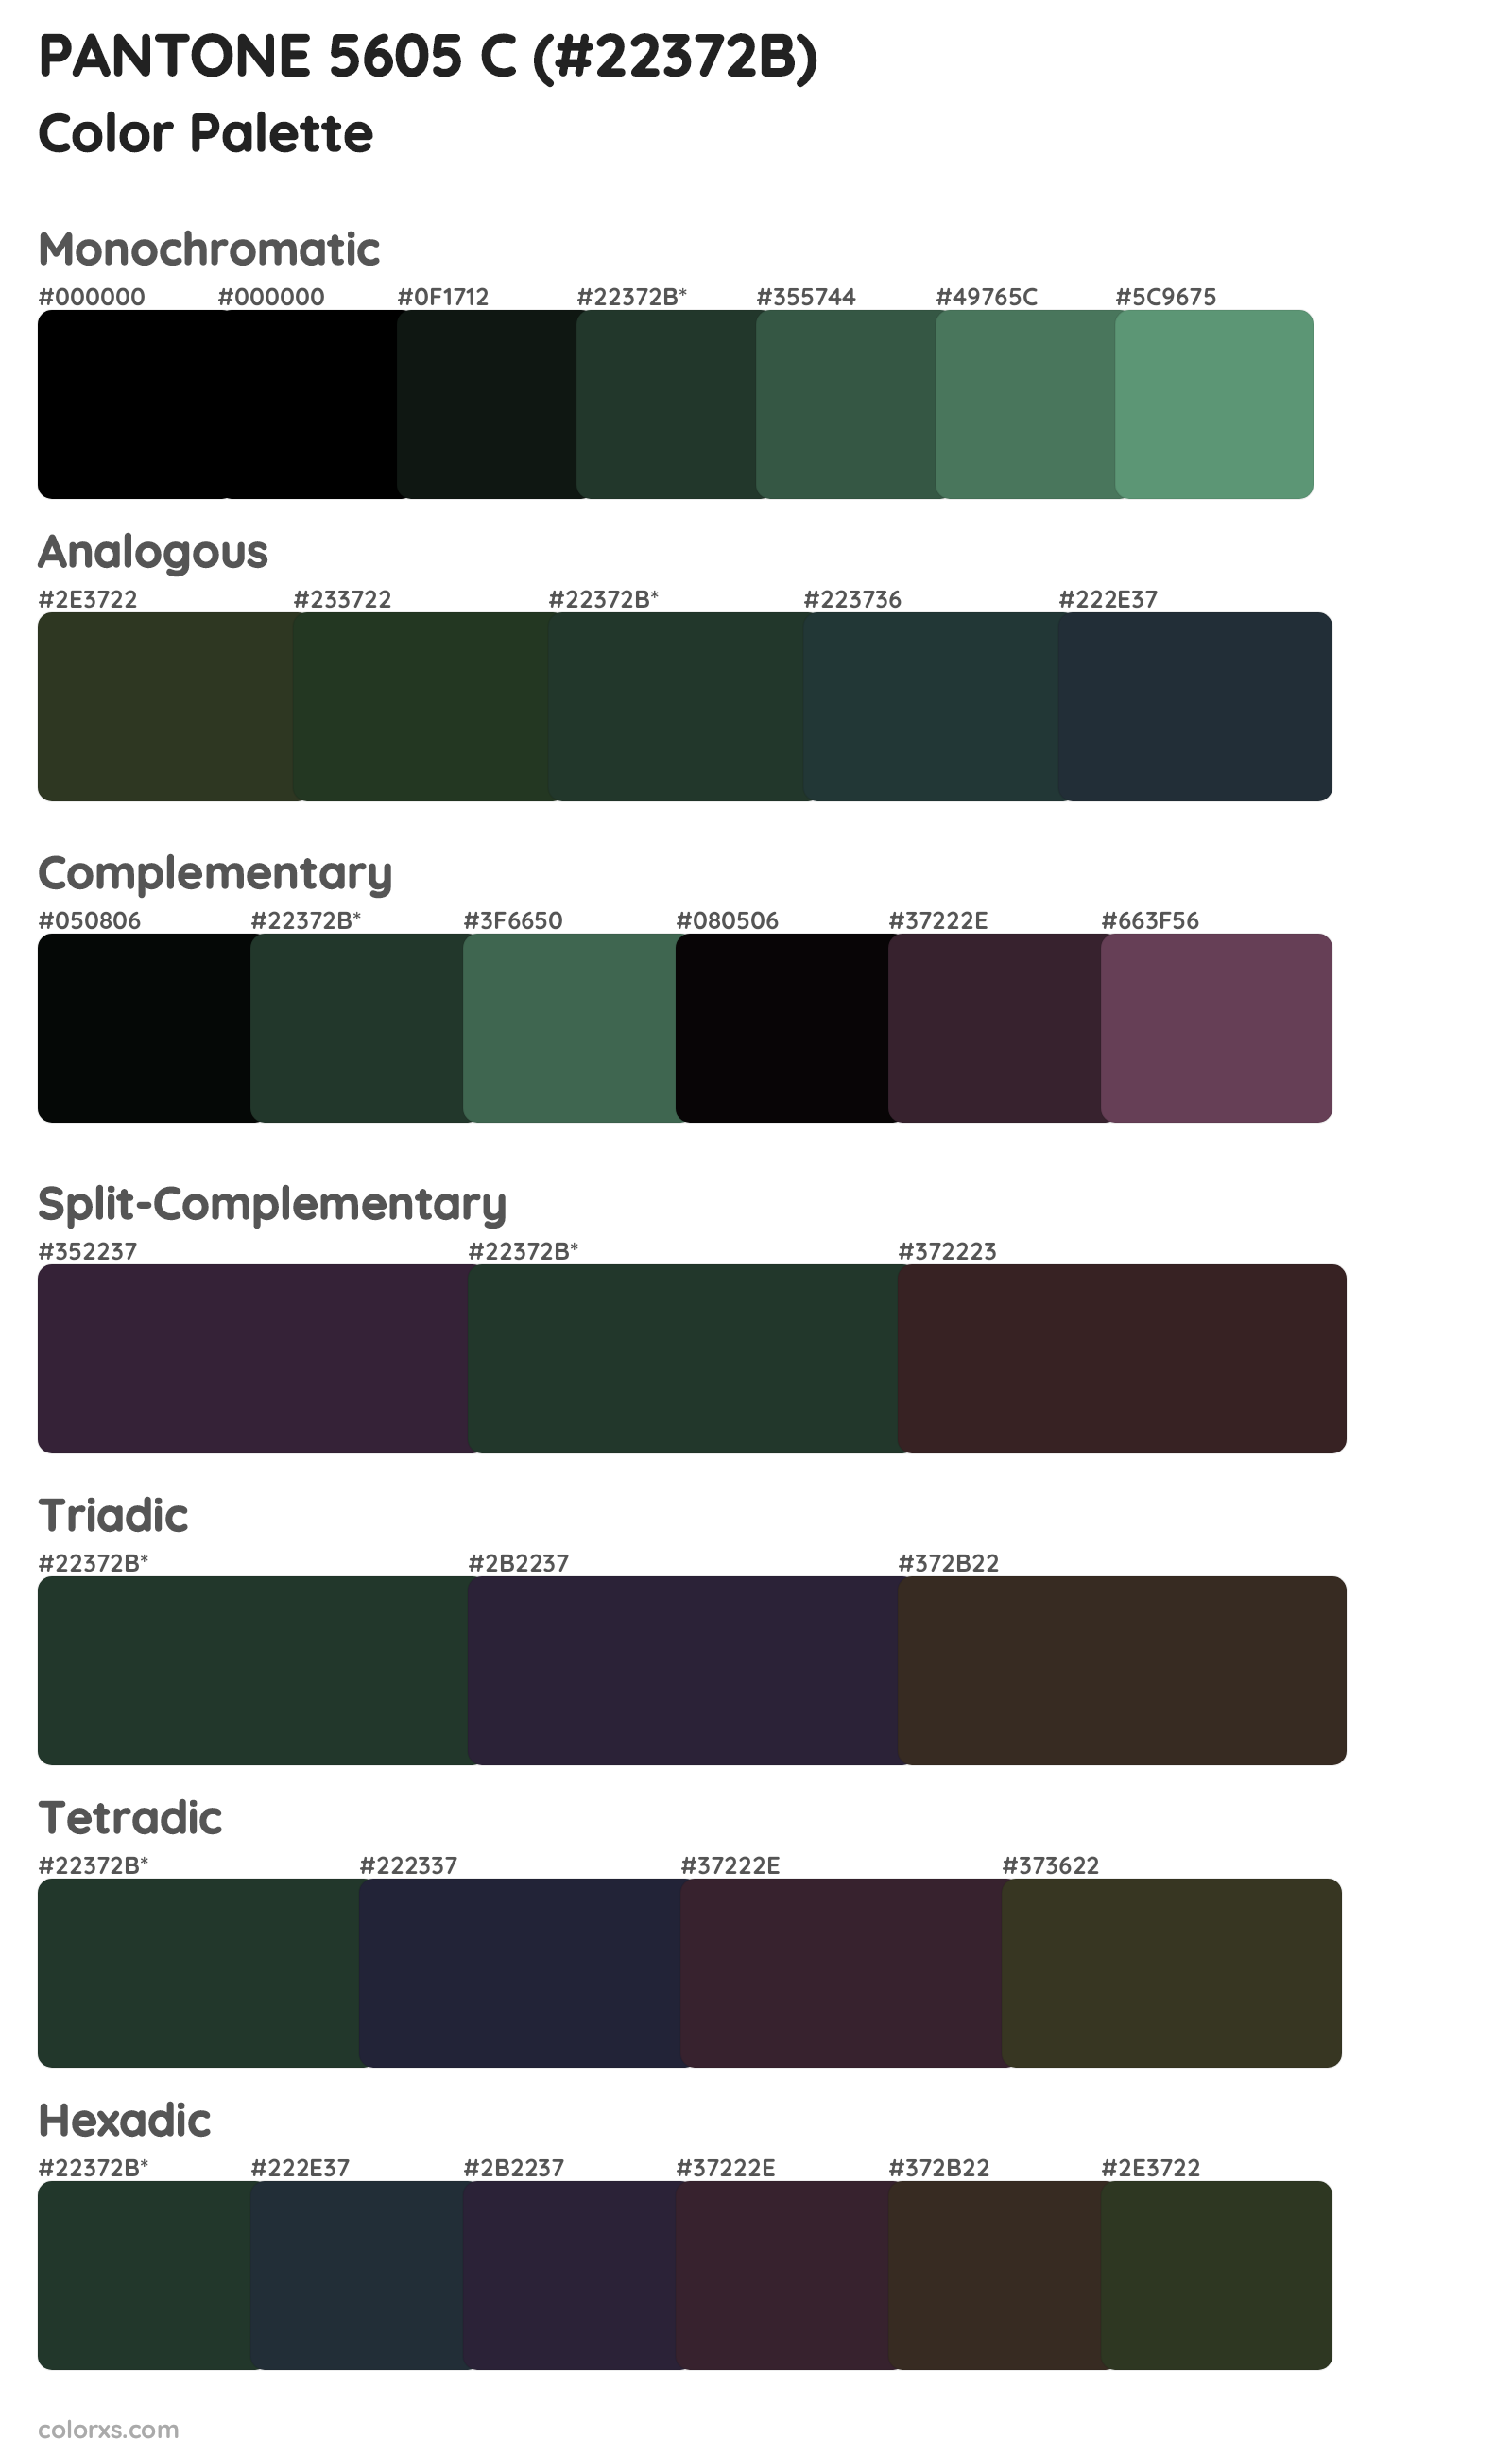 PANTONE 5605 C Color Scheme Palettes